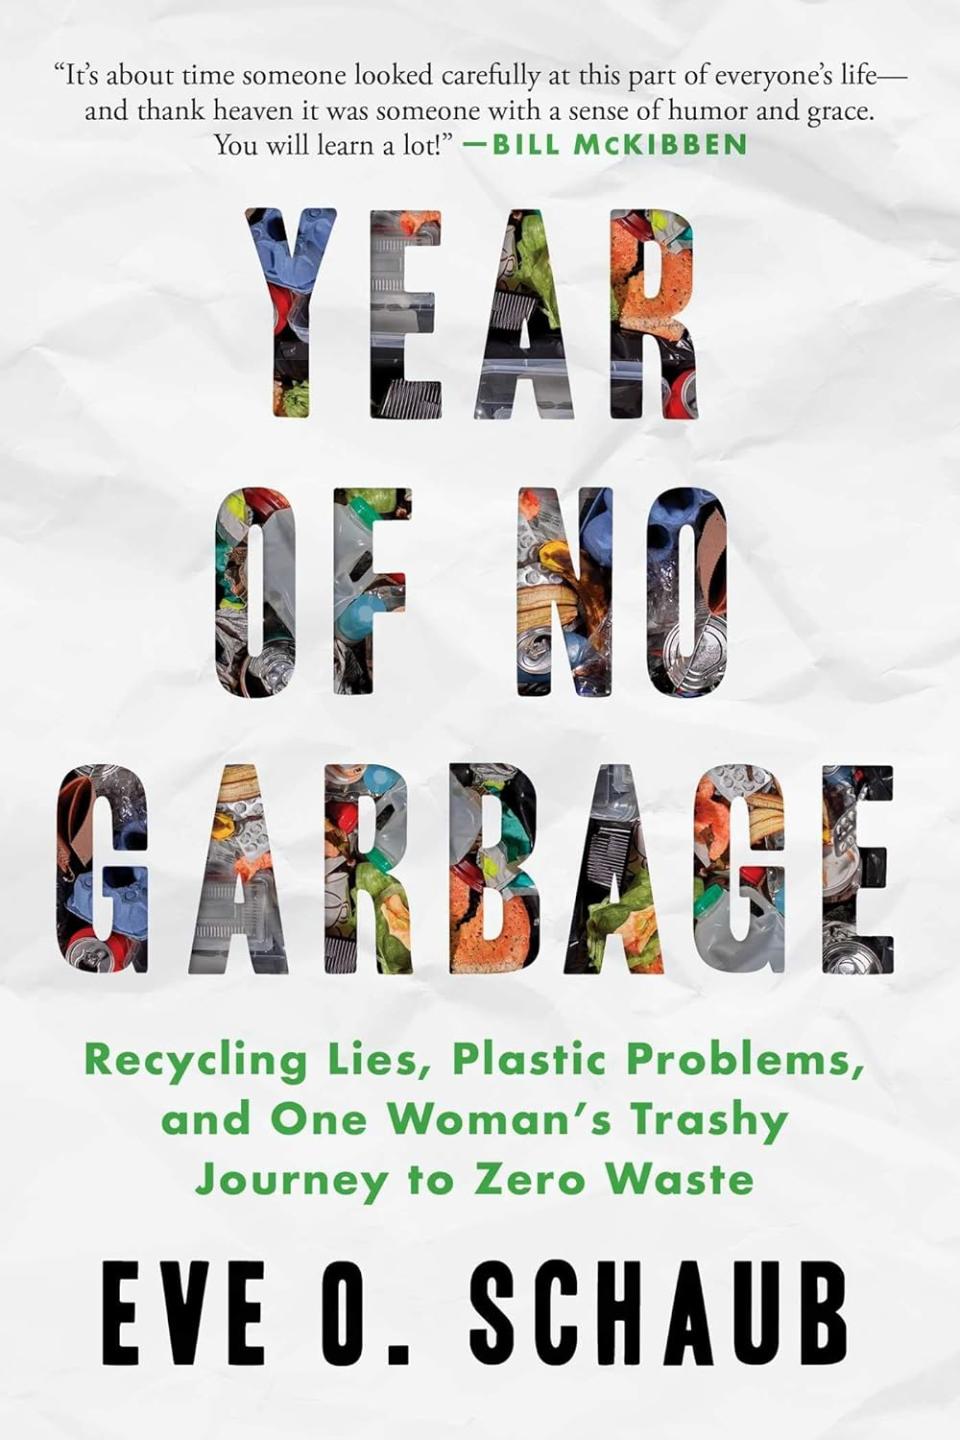 "Year of No Garbage"